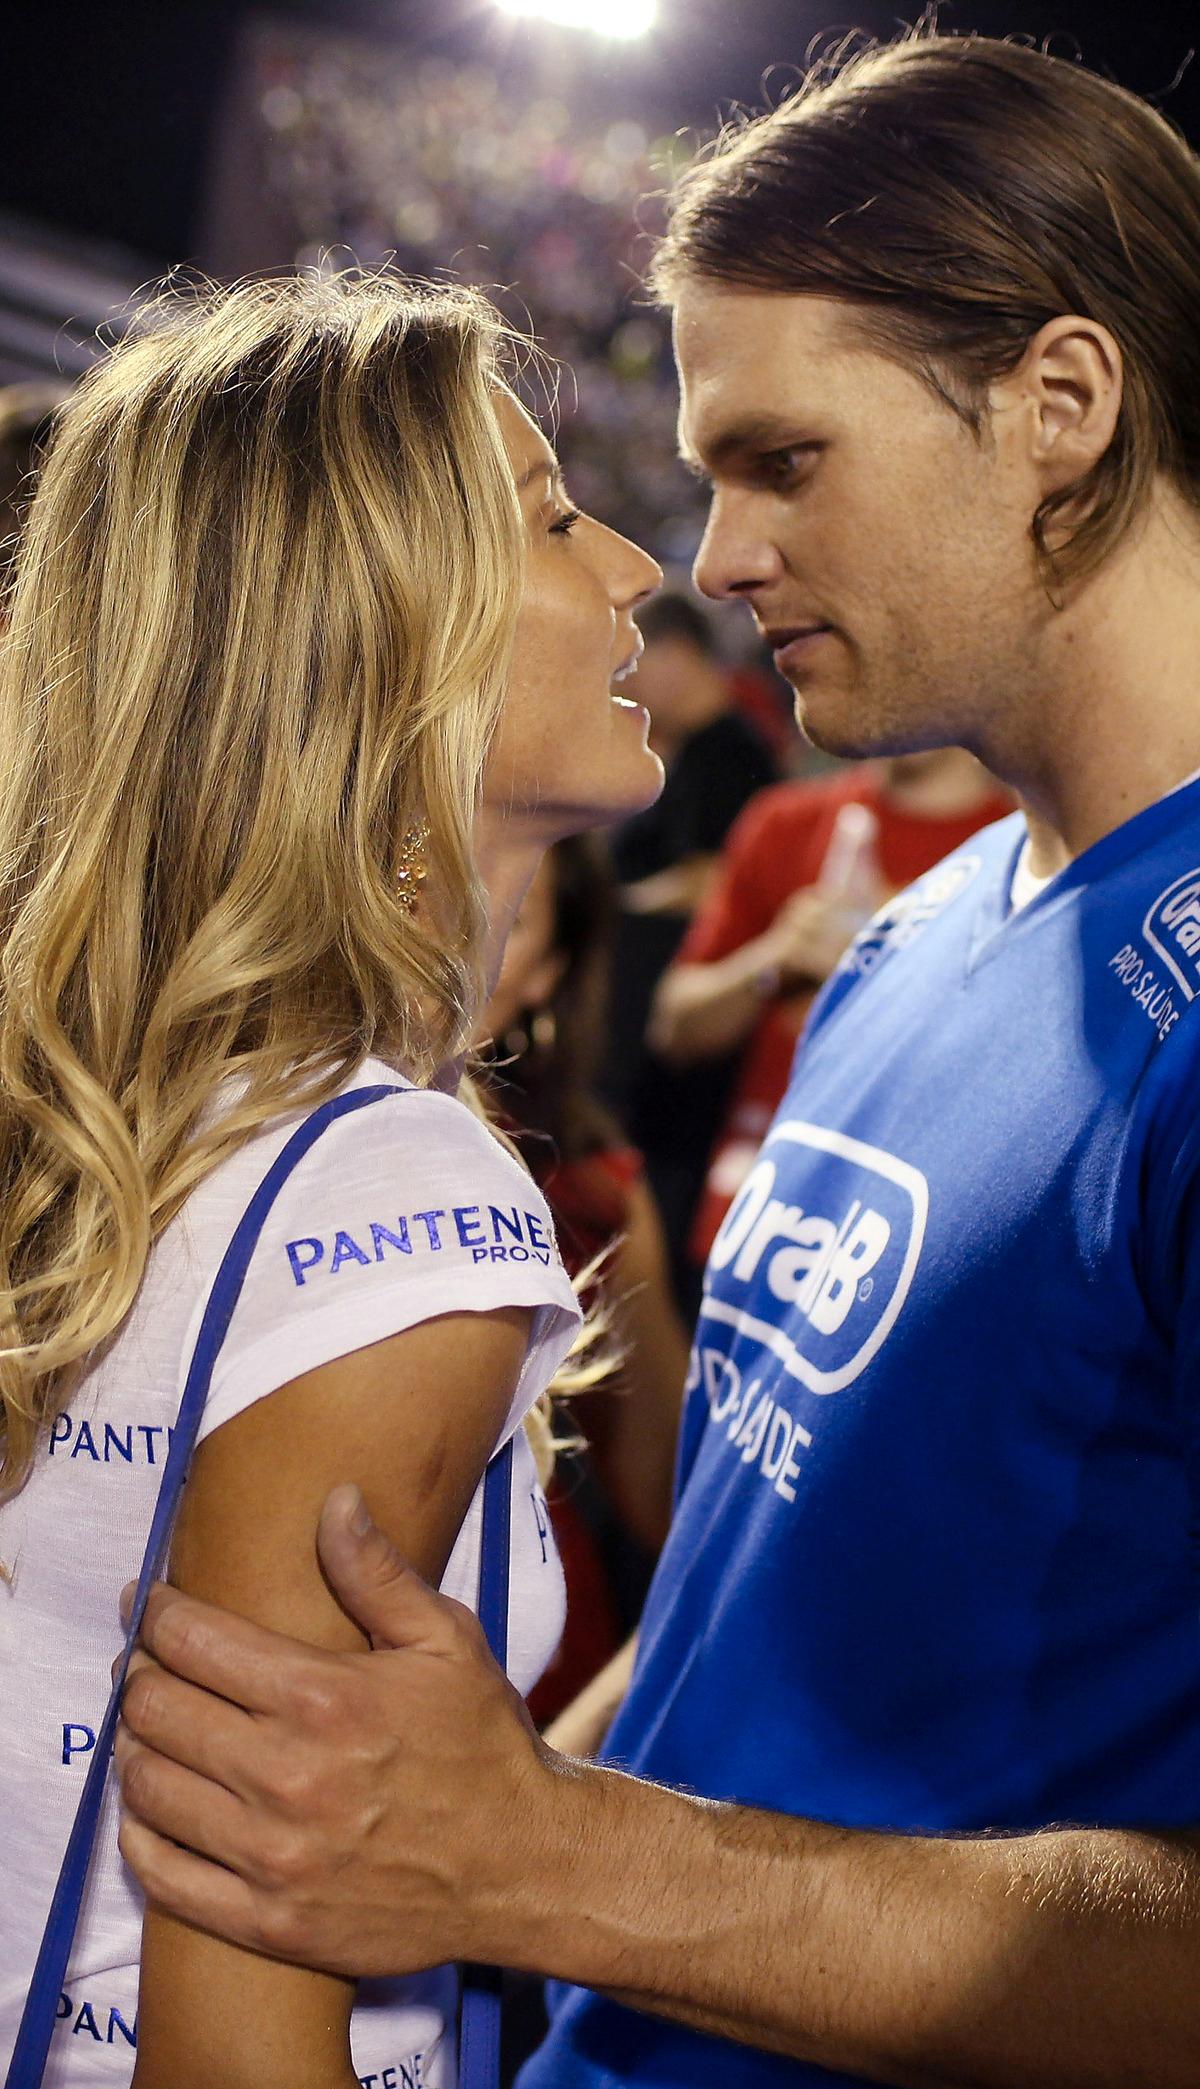 Tom Brady, här med hustrun Gisele Bündchen, är en av USA:s populäraste idrottsprofiler.